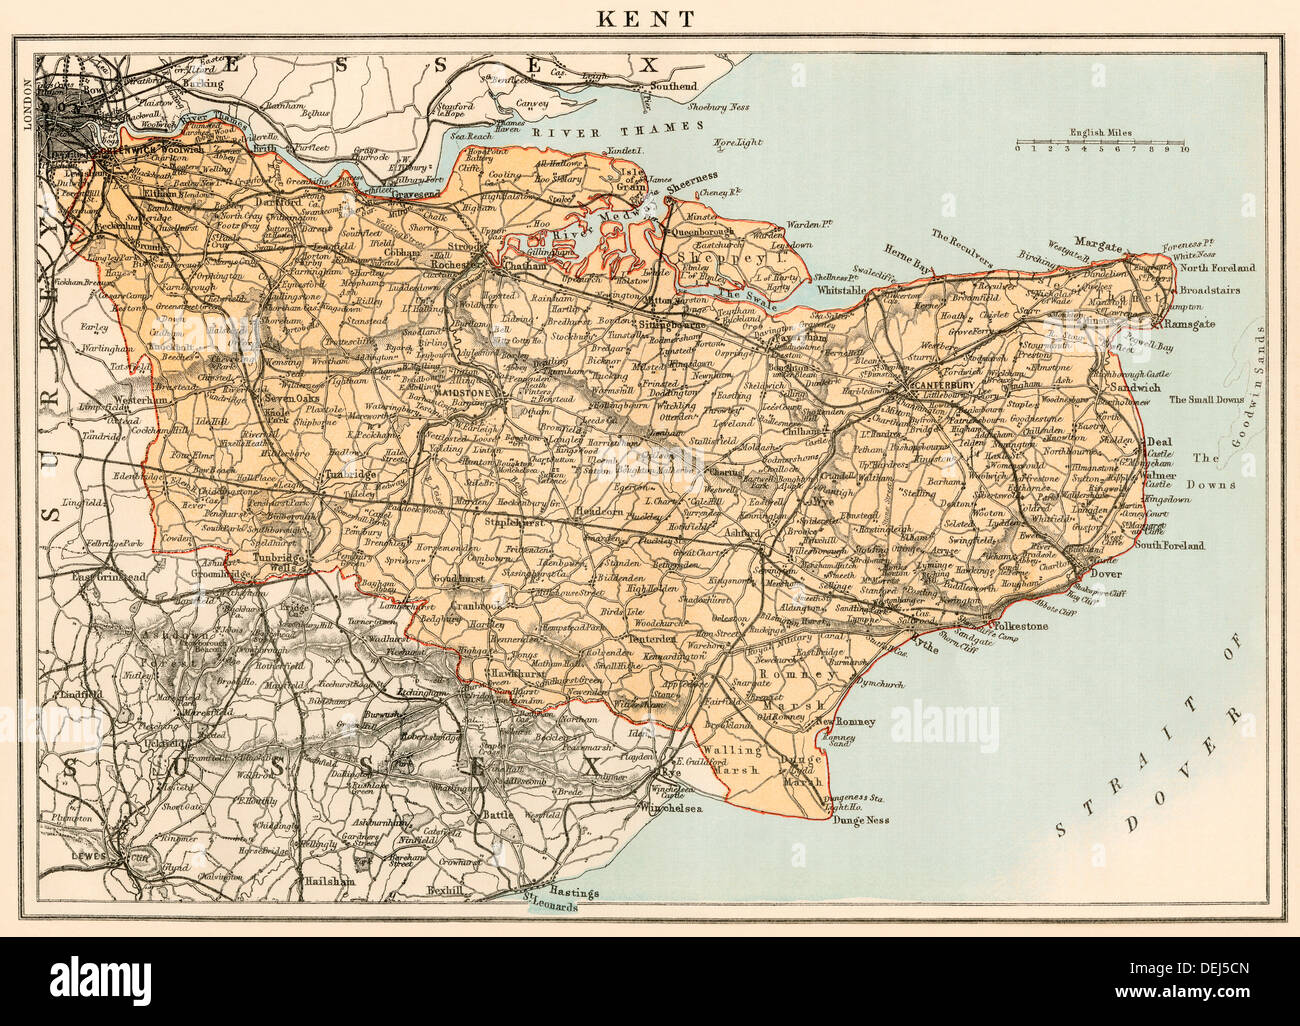 Plan de Kent, Angleterre, 1870. Lithographie couleur Banque D'Images